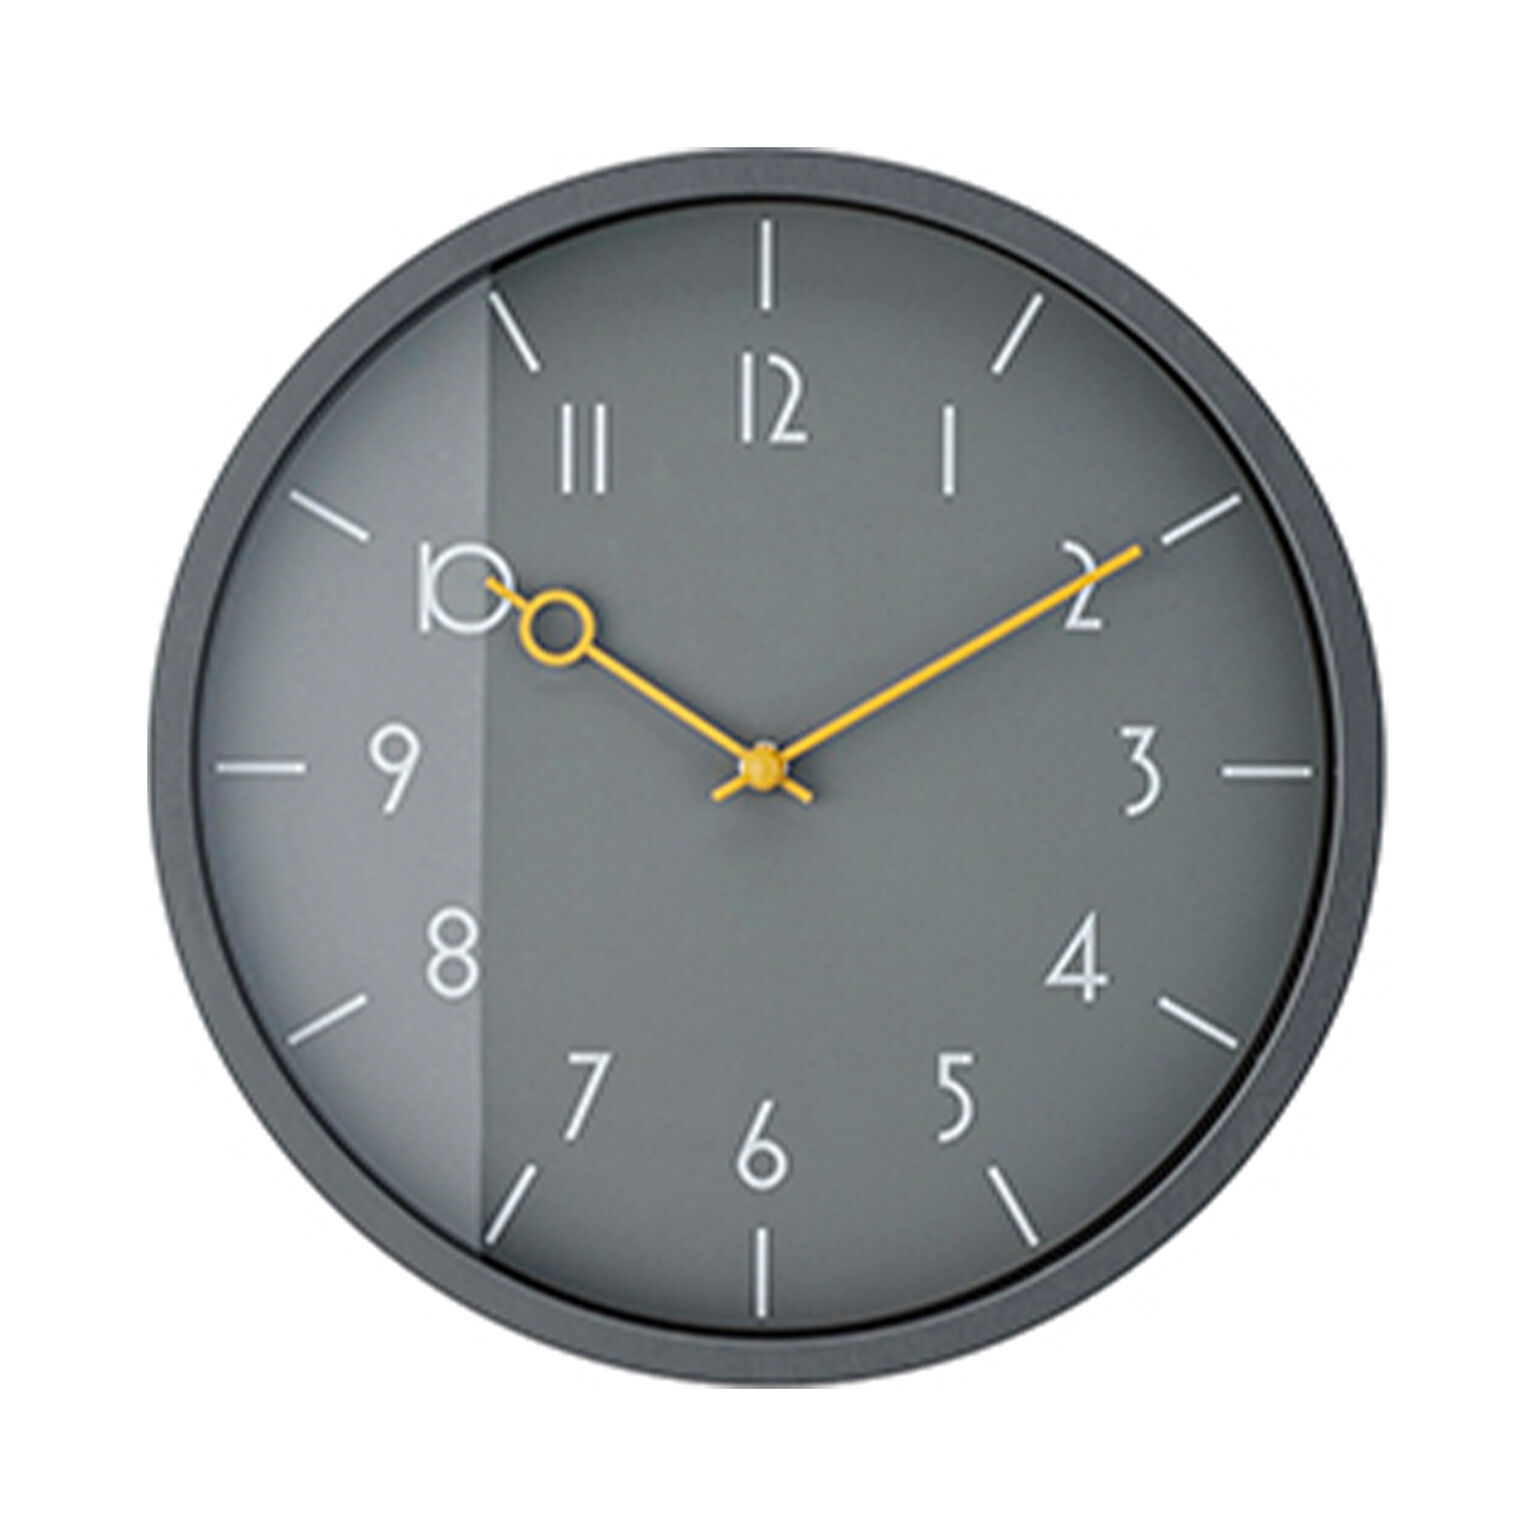 壁掛け時計 時計 おしゃれ シンプル スイープムーブメント Veteli ヴェテリ かわいい ウォールクロック 北欧 ミッドセンチュリー ダイニング リビング 